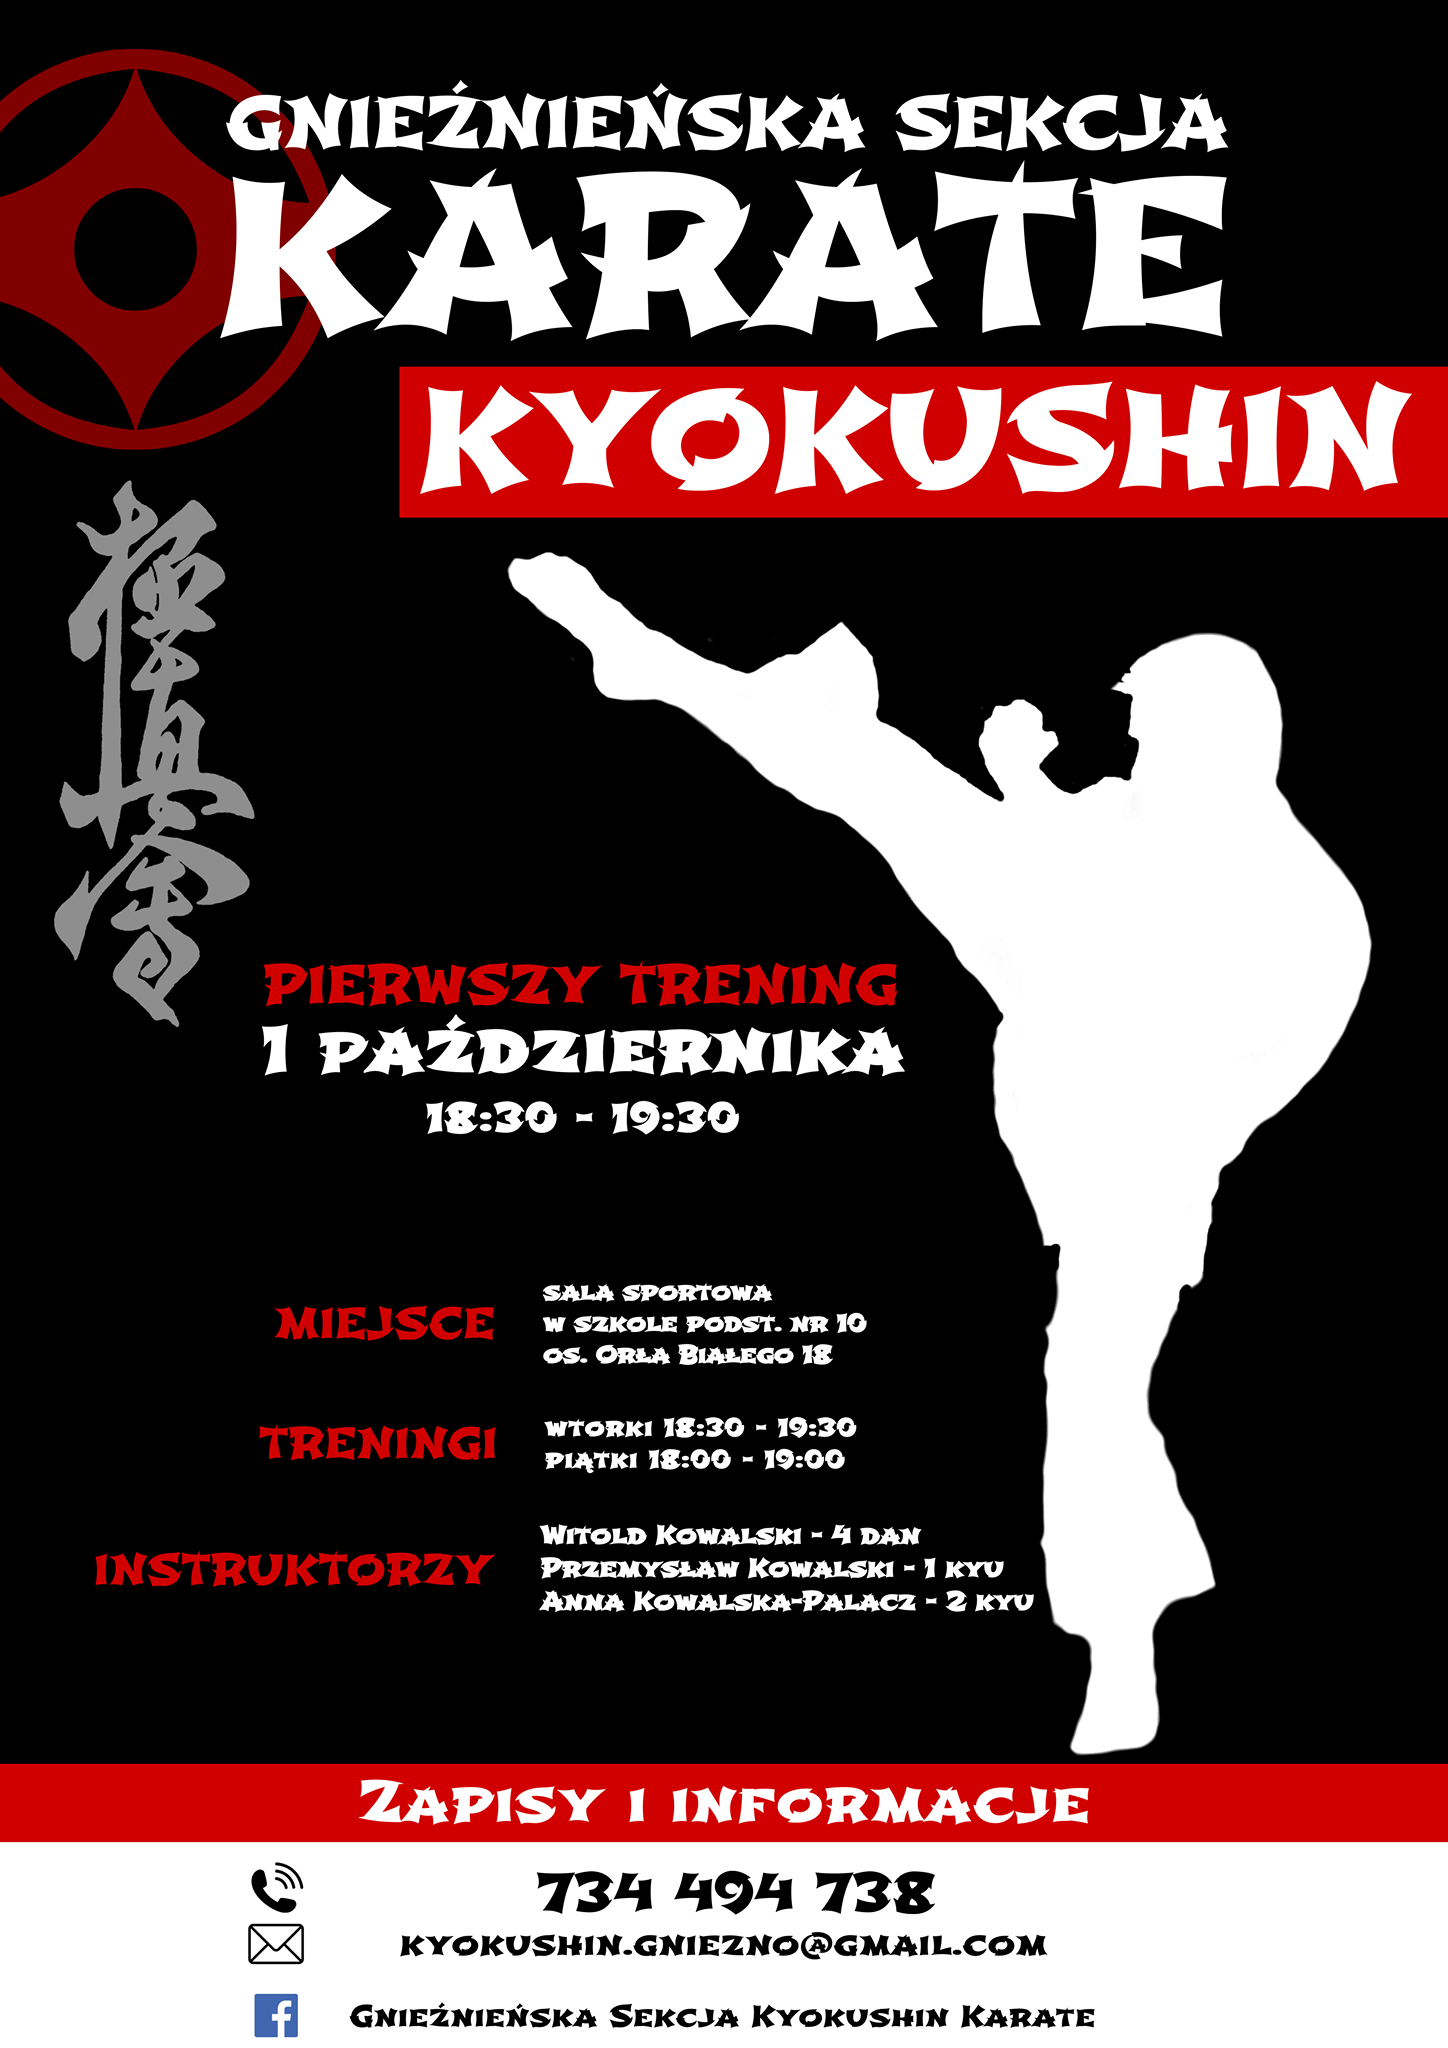 Plakat zapowiadający treningi Gnieźnieńskiej Sekcji Kyokushin Karate